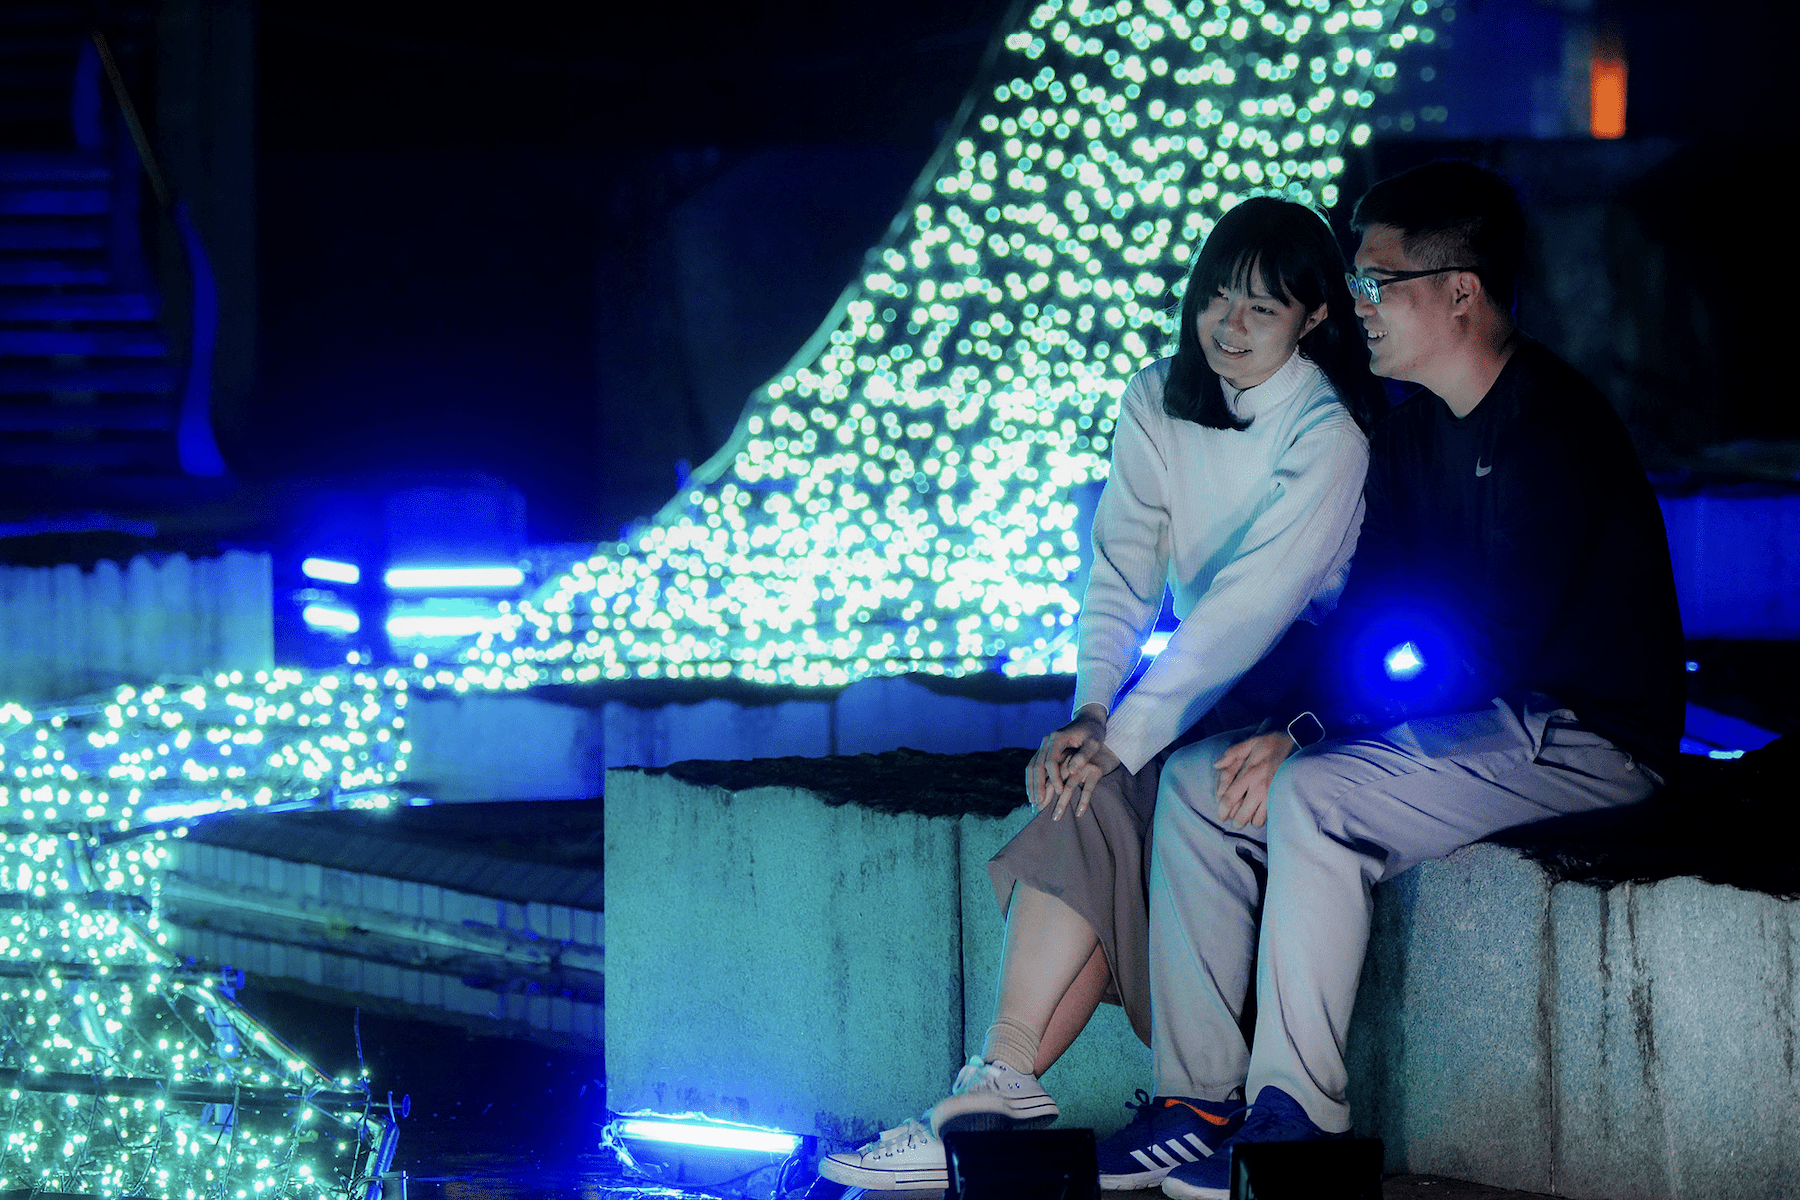 新莊中港大排光雕展3/1點燃浪漫     百萬LED燈打造戀愛氛圍     LUXY BOYZ激光秀助興